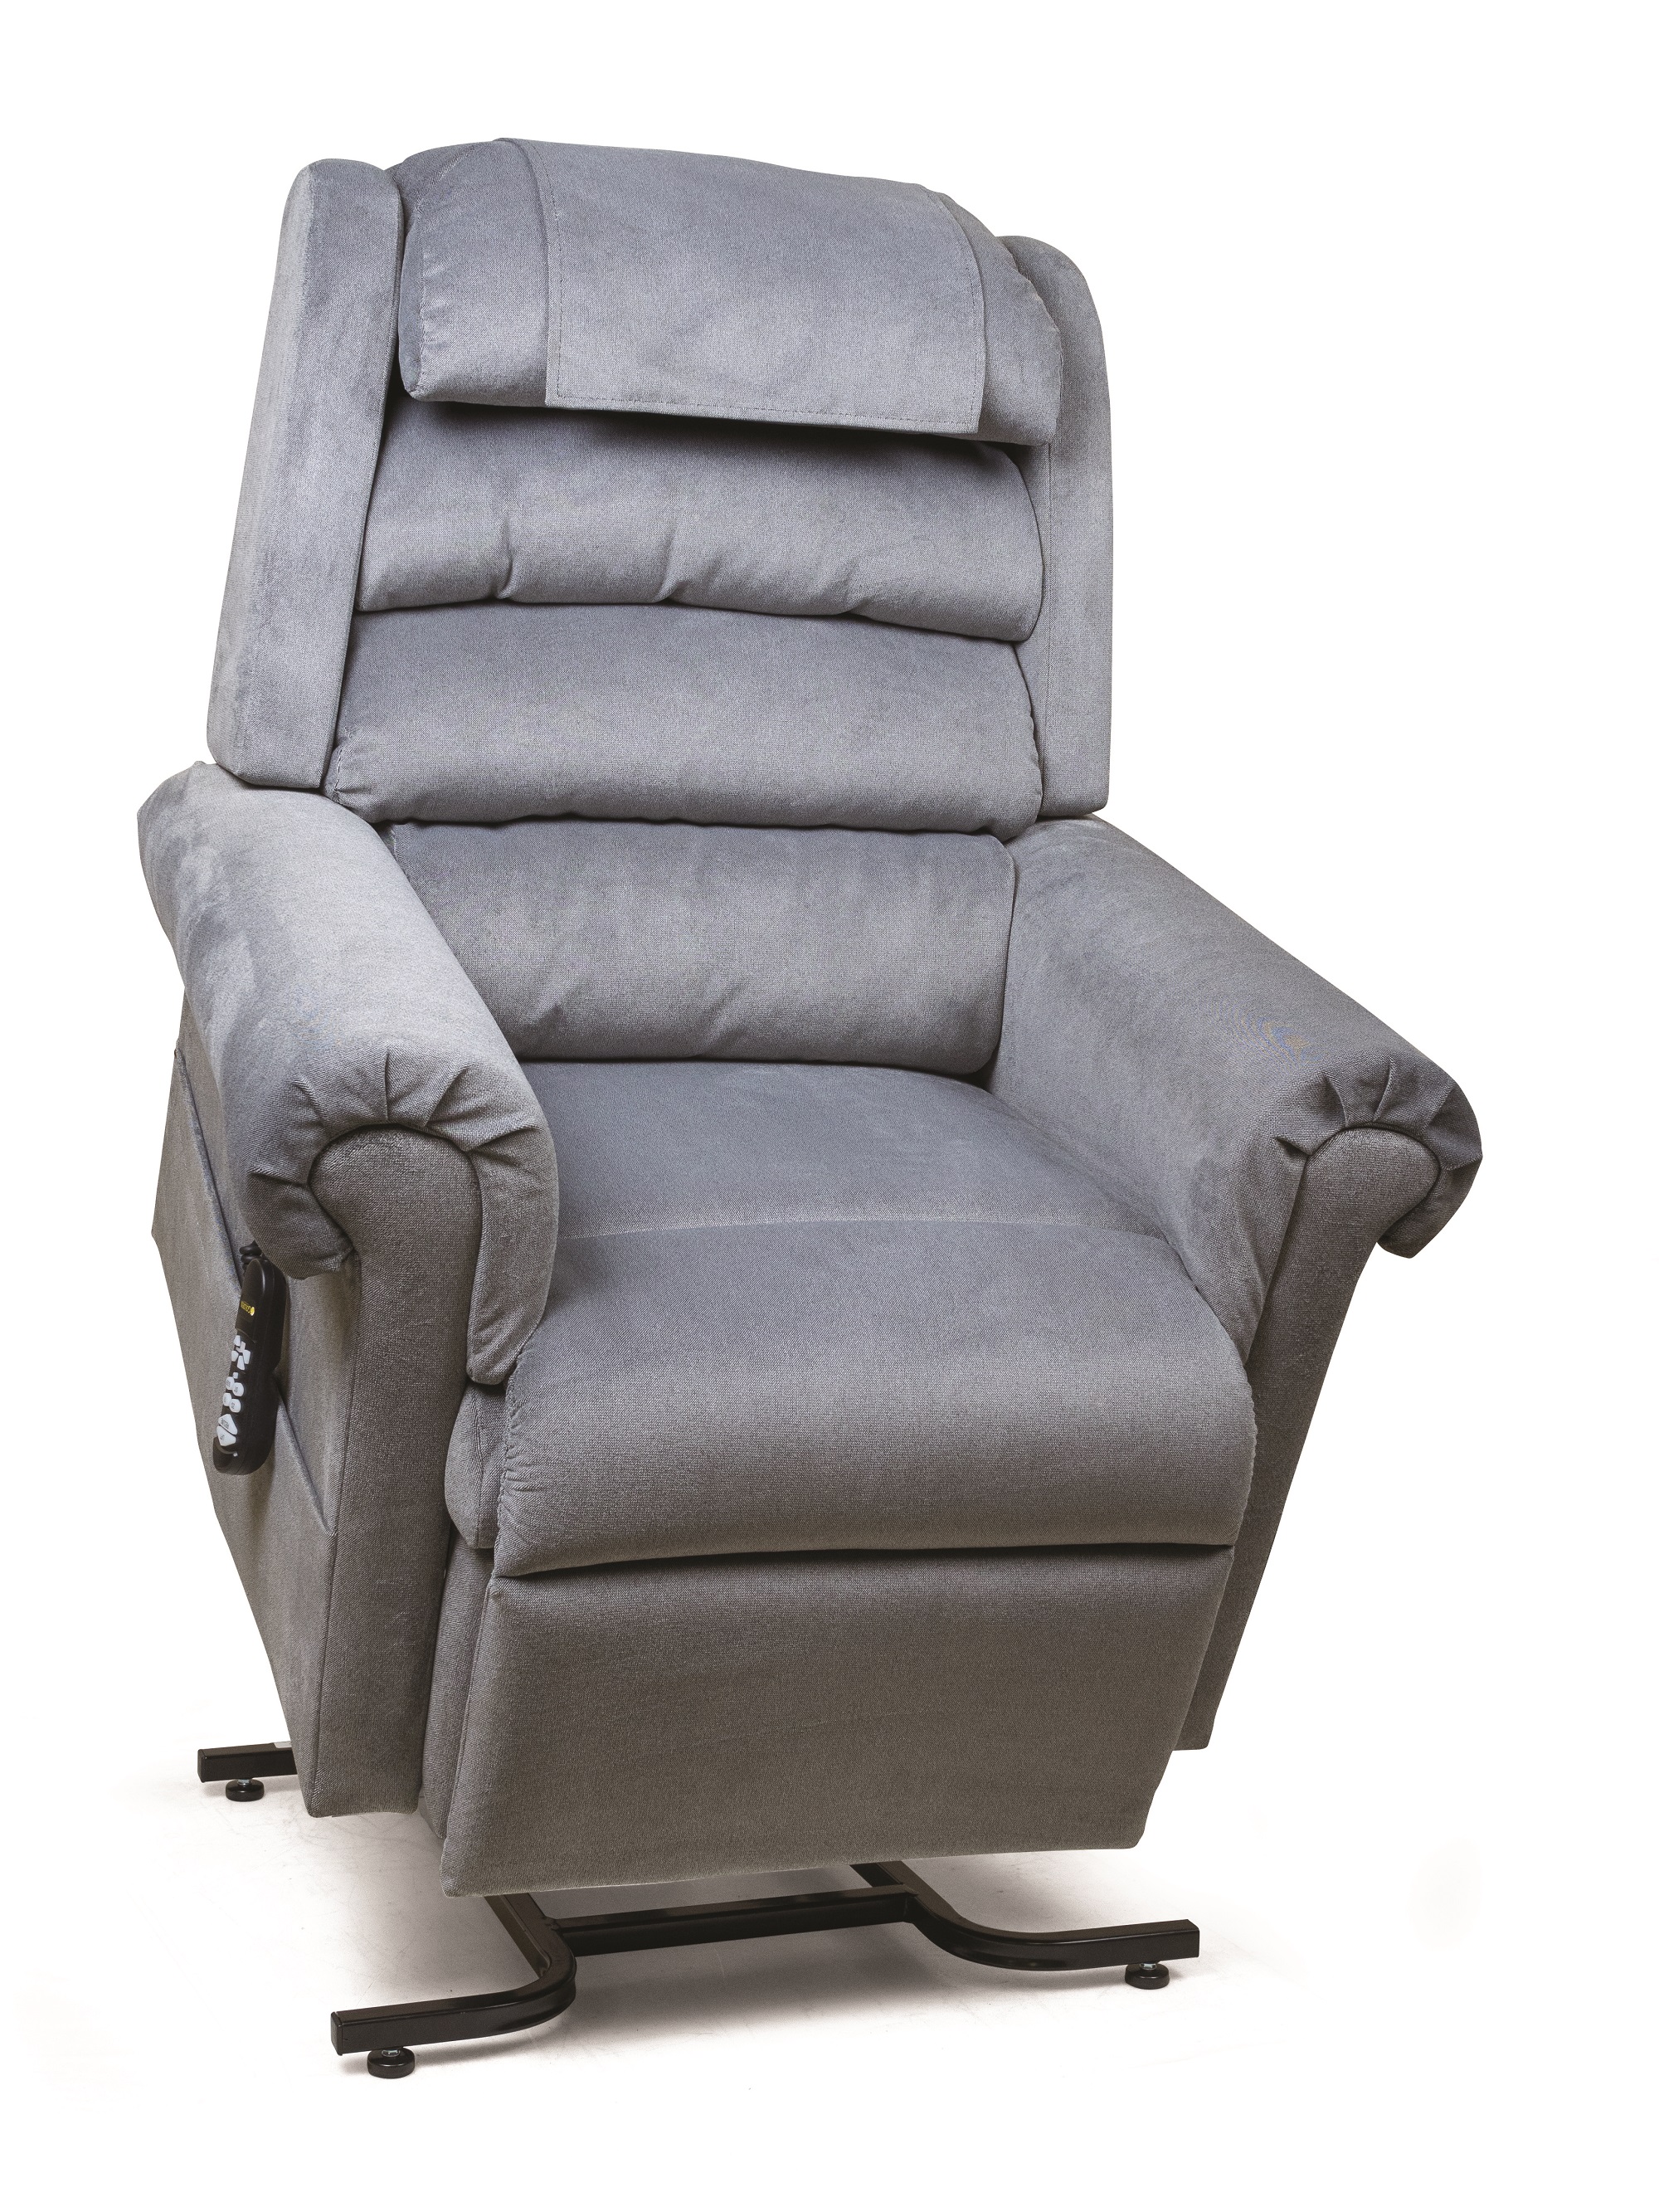 Photo of Golden Technologies Relaxer Lift Chair, Size Medium